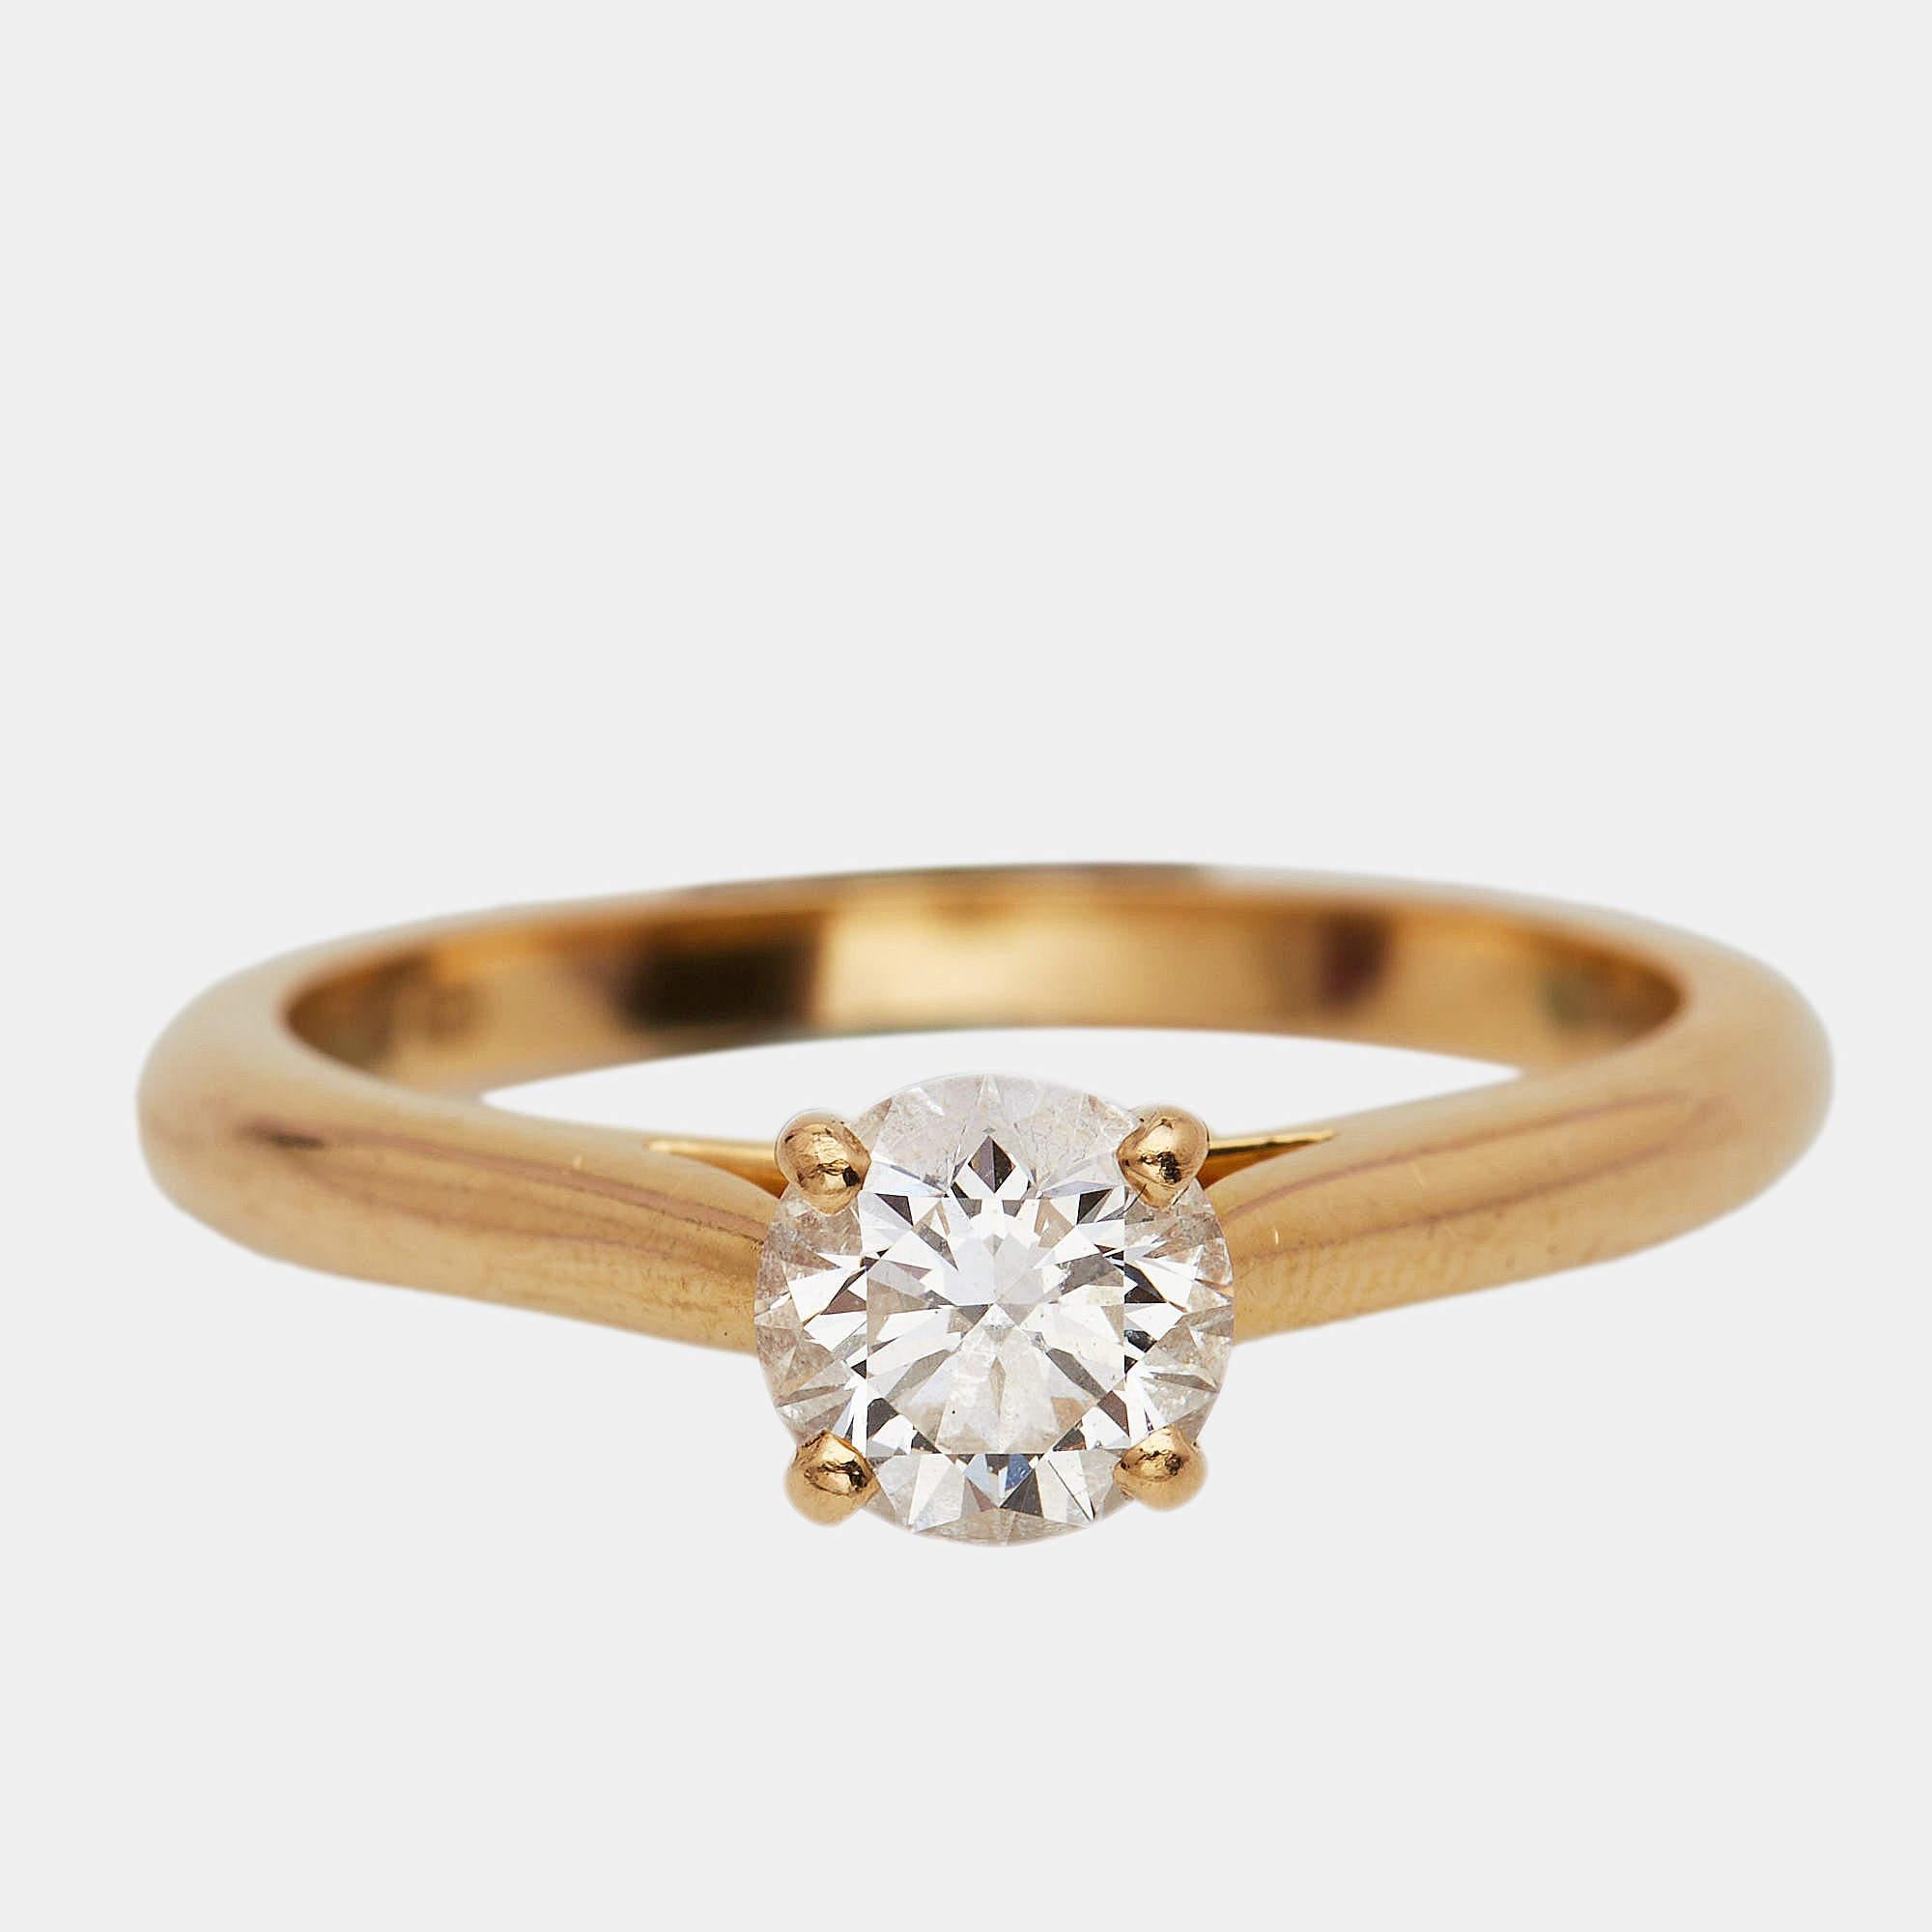 Dieser wunderschöne Ring von Cartier ist klassisch und exquisit. Der aus 18 Karat Gelbgold gefertigte und mit einem Brillant besetzte Ring zeichnet sich durch seine Unverwechselbarkeit und Kunstfertigkeit aus. Dieser bezaubernde Ring ist ein wahres